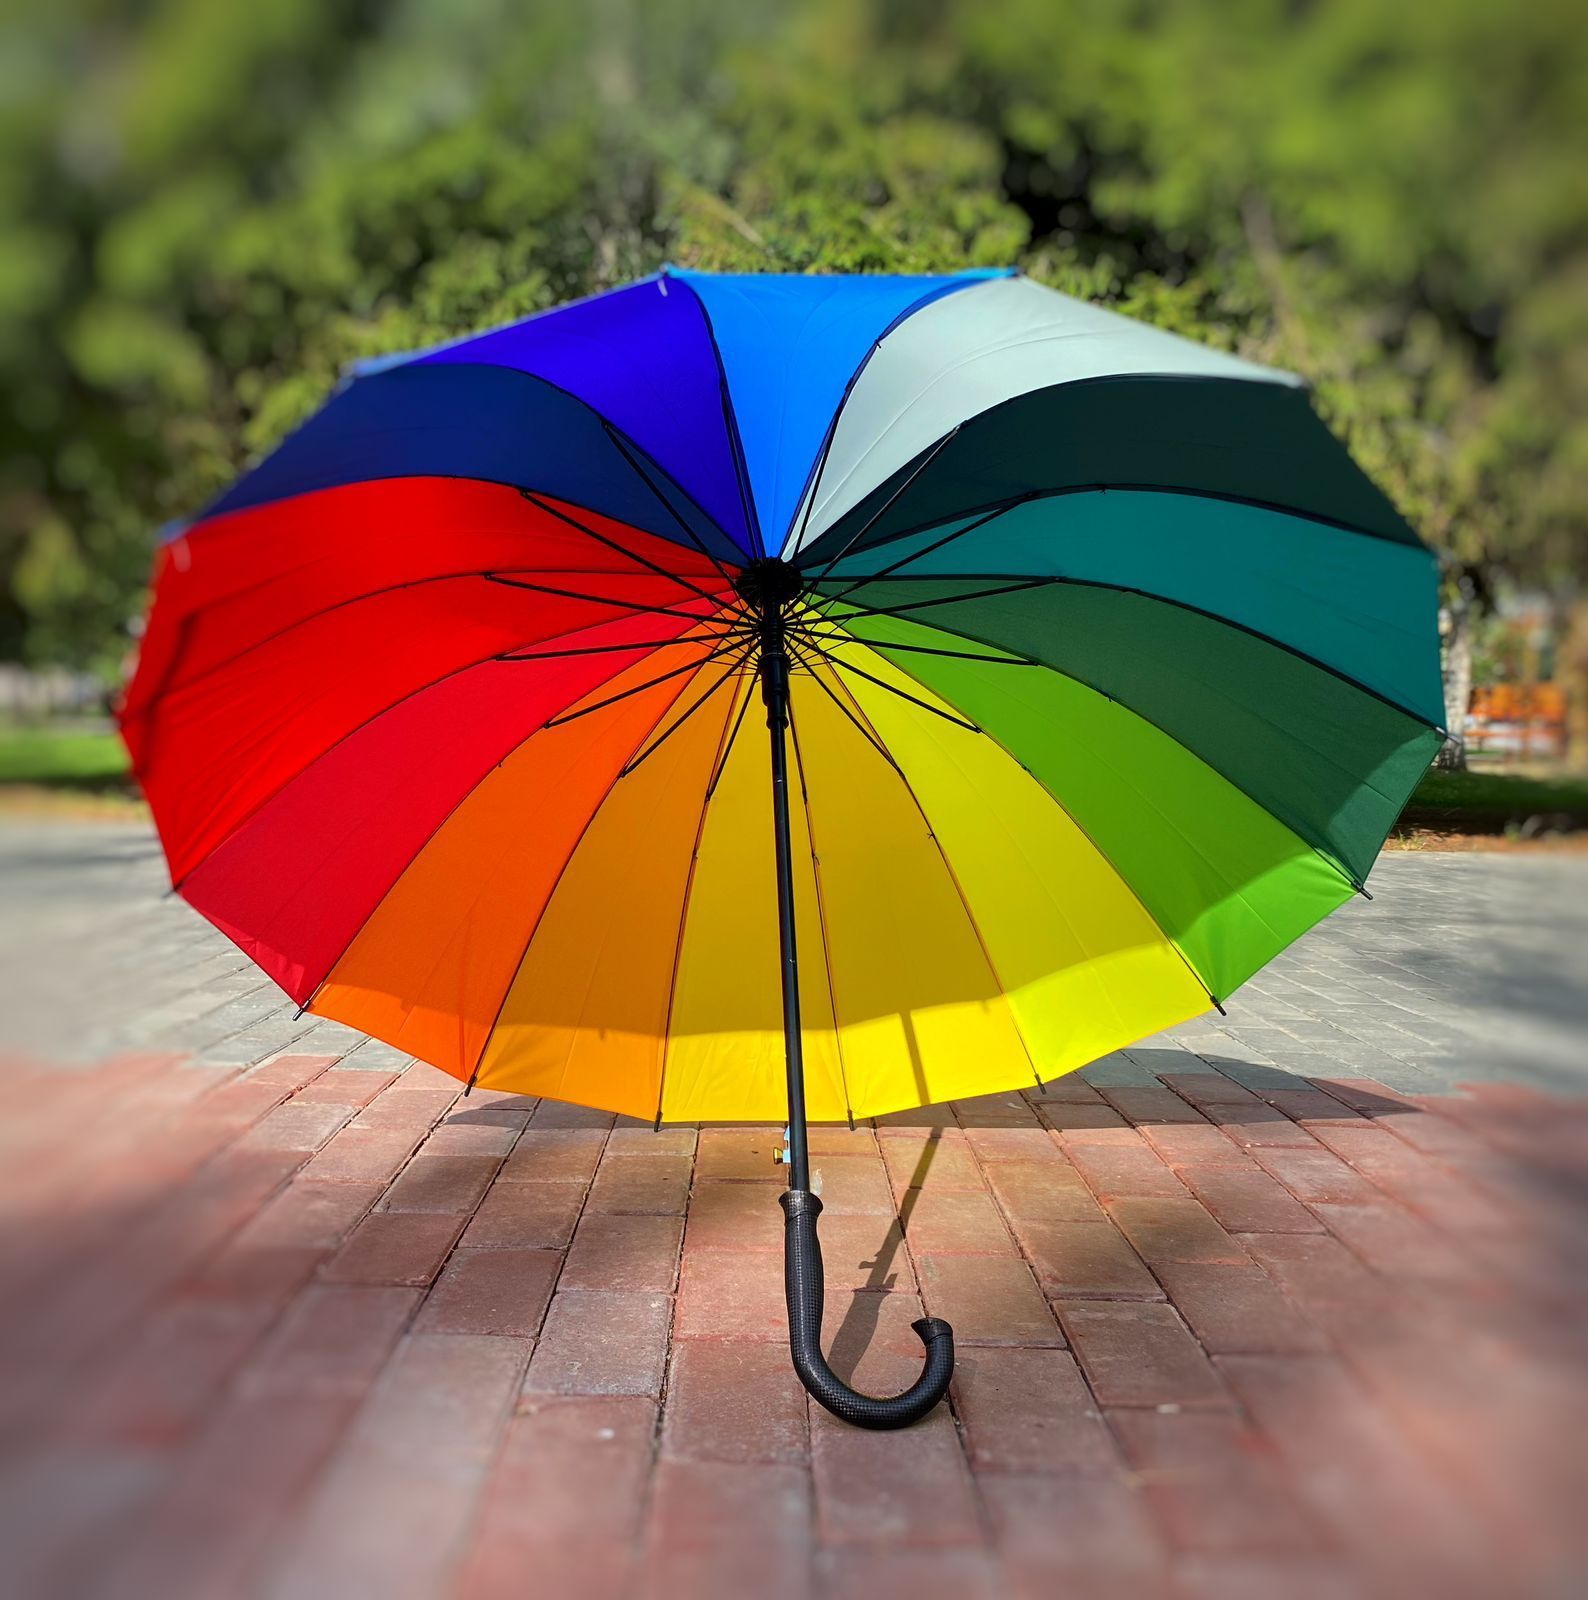 Рейтинг лучших зонтов — какие зонтики самые прочные и надежные, ТОП фирм